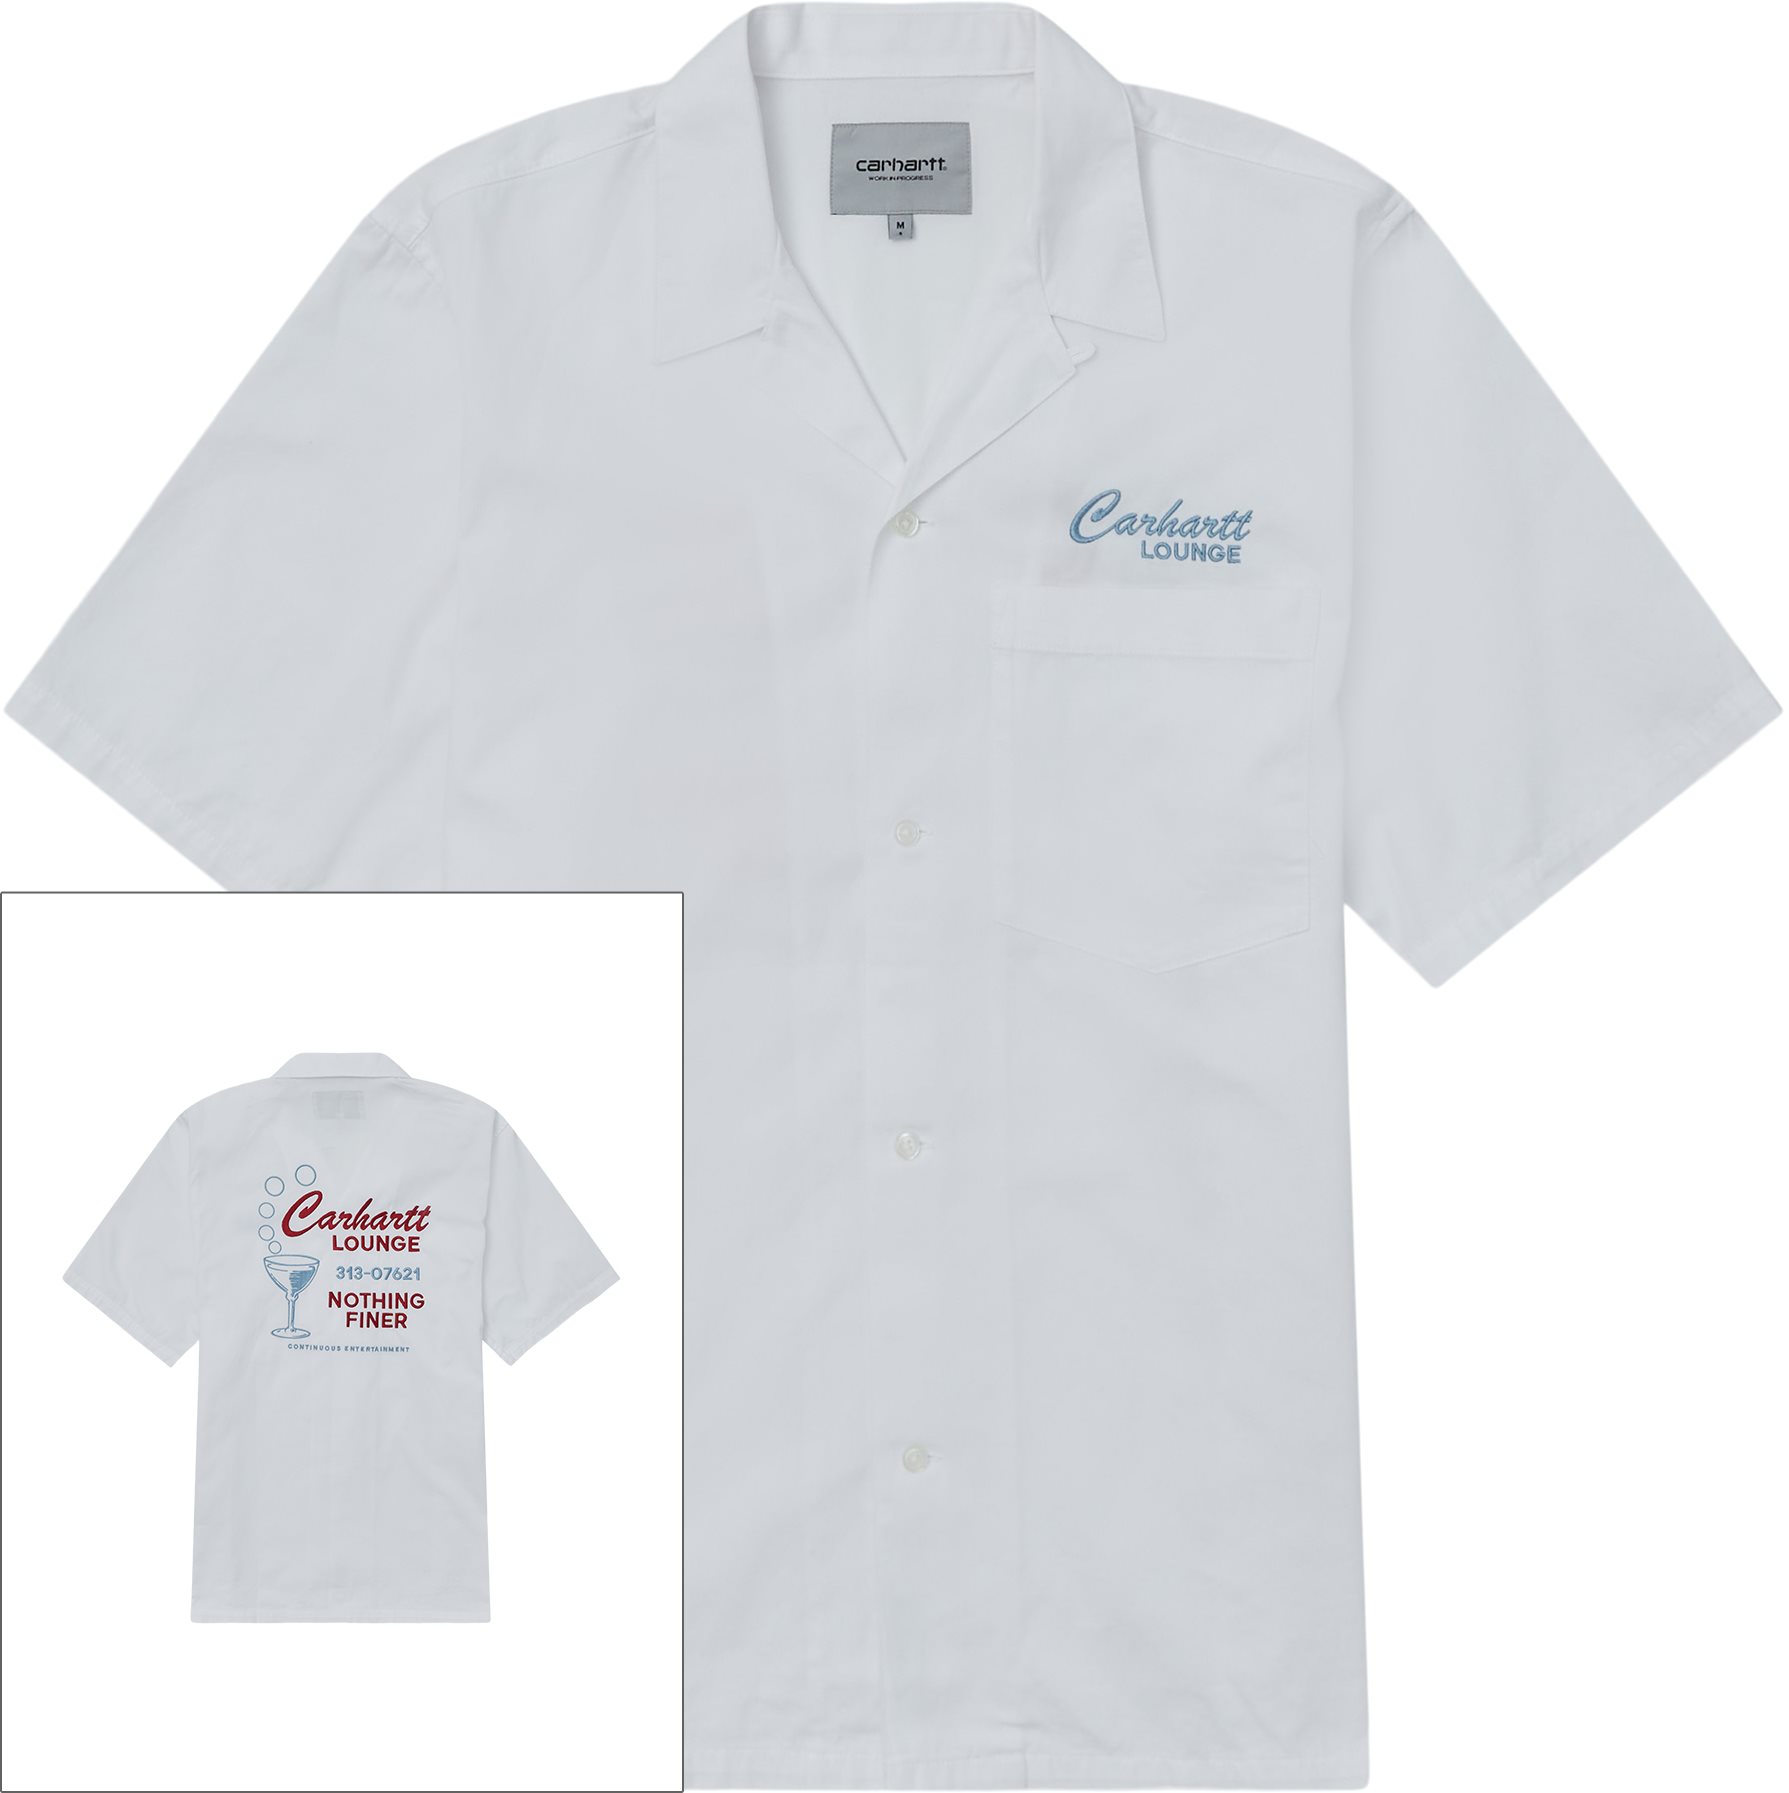 Carhartt Lounge K/æ Skjorte I030046 - Skjorter - Loose fit - Hvid